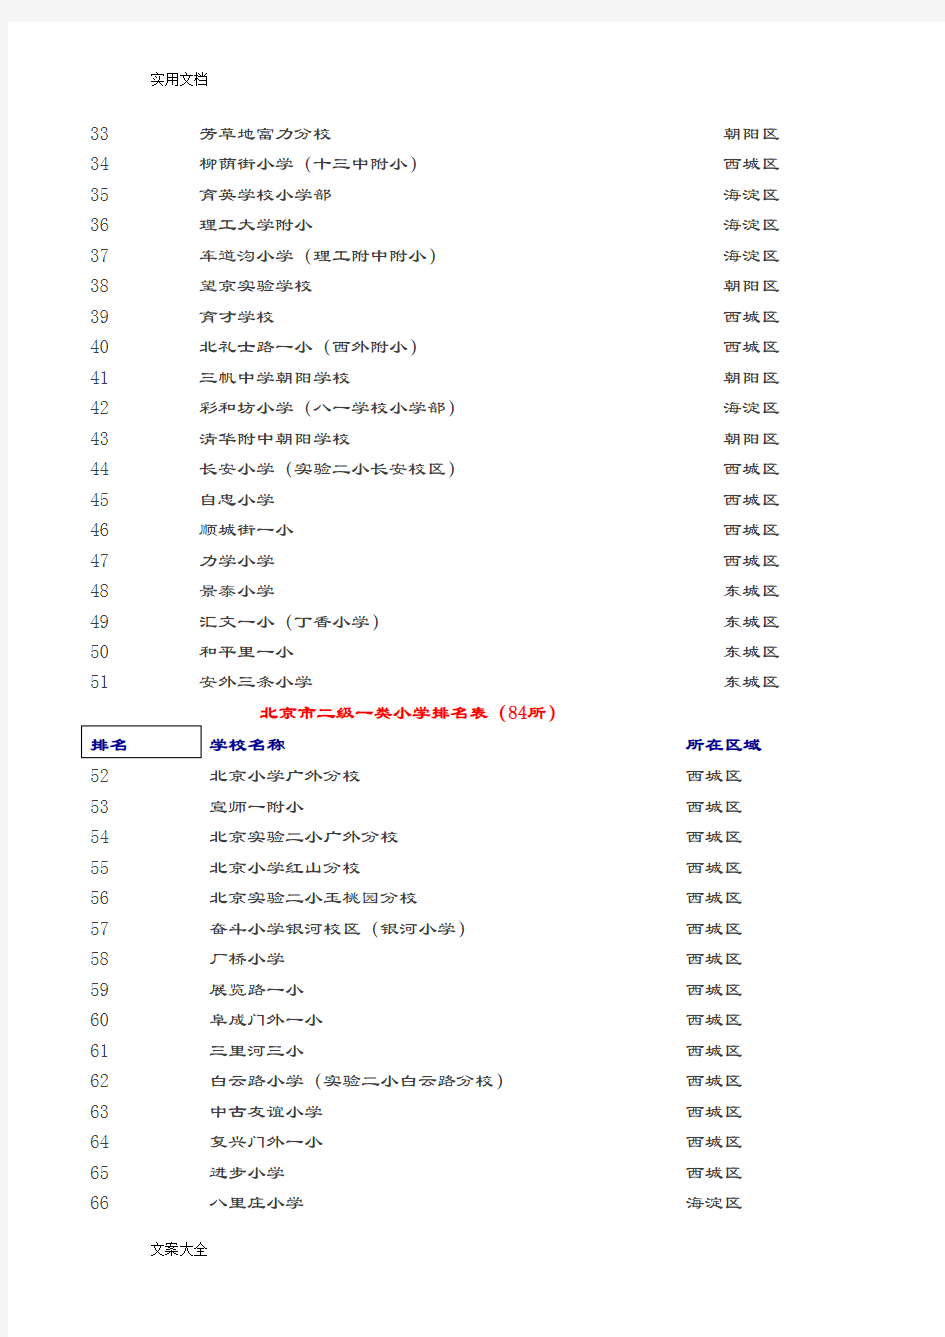 北京市小学排名表